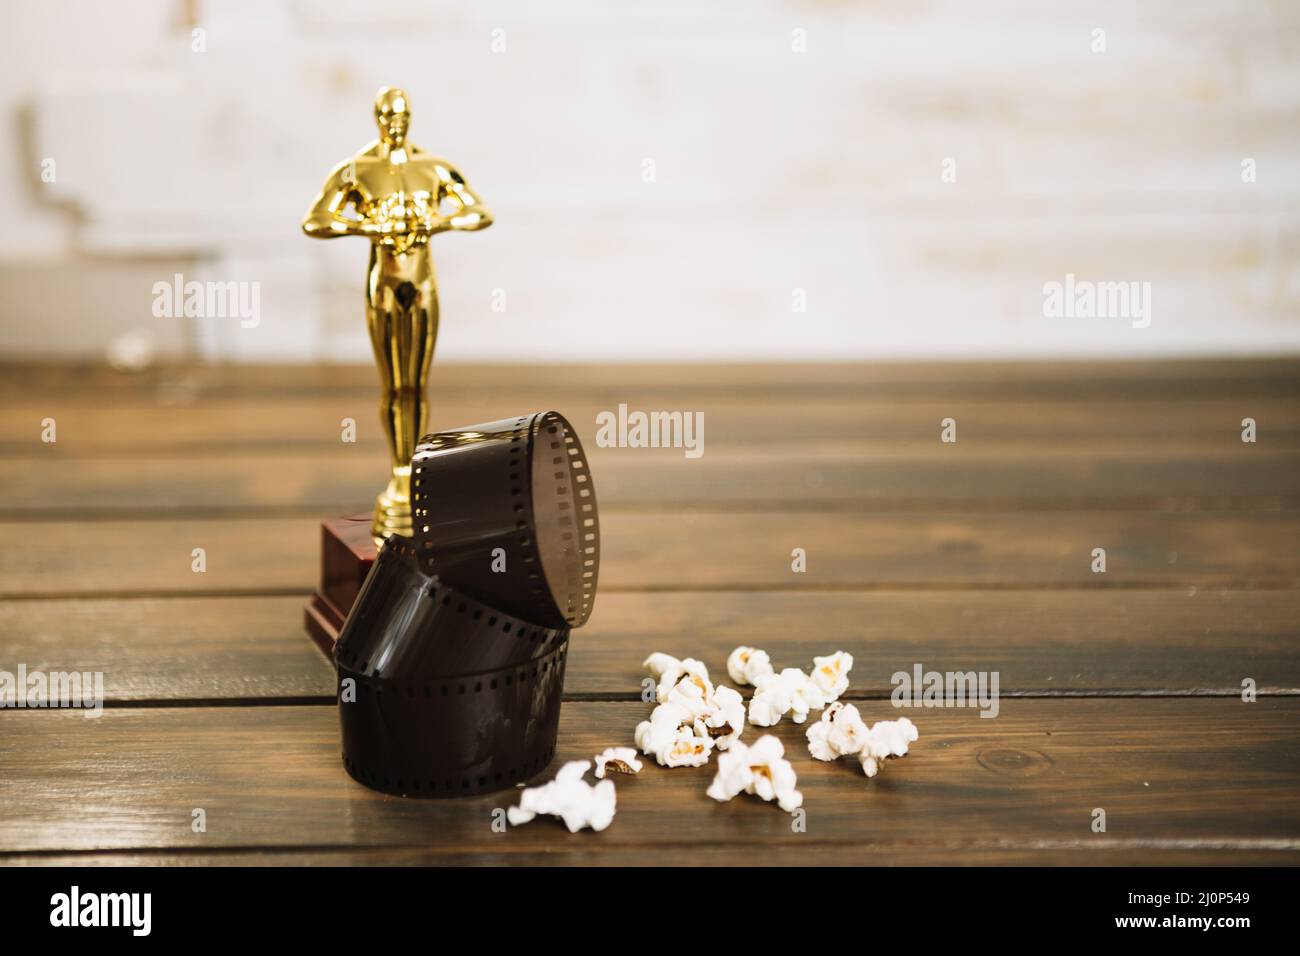 Pop-corn pour film Oscar statuette . Haute qualité et résolution magnifique concept de photo Banque D'Images